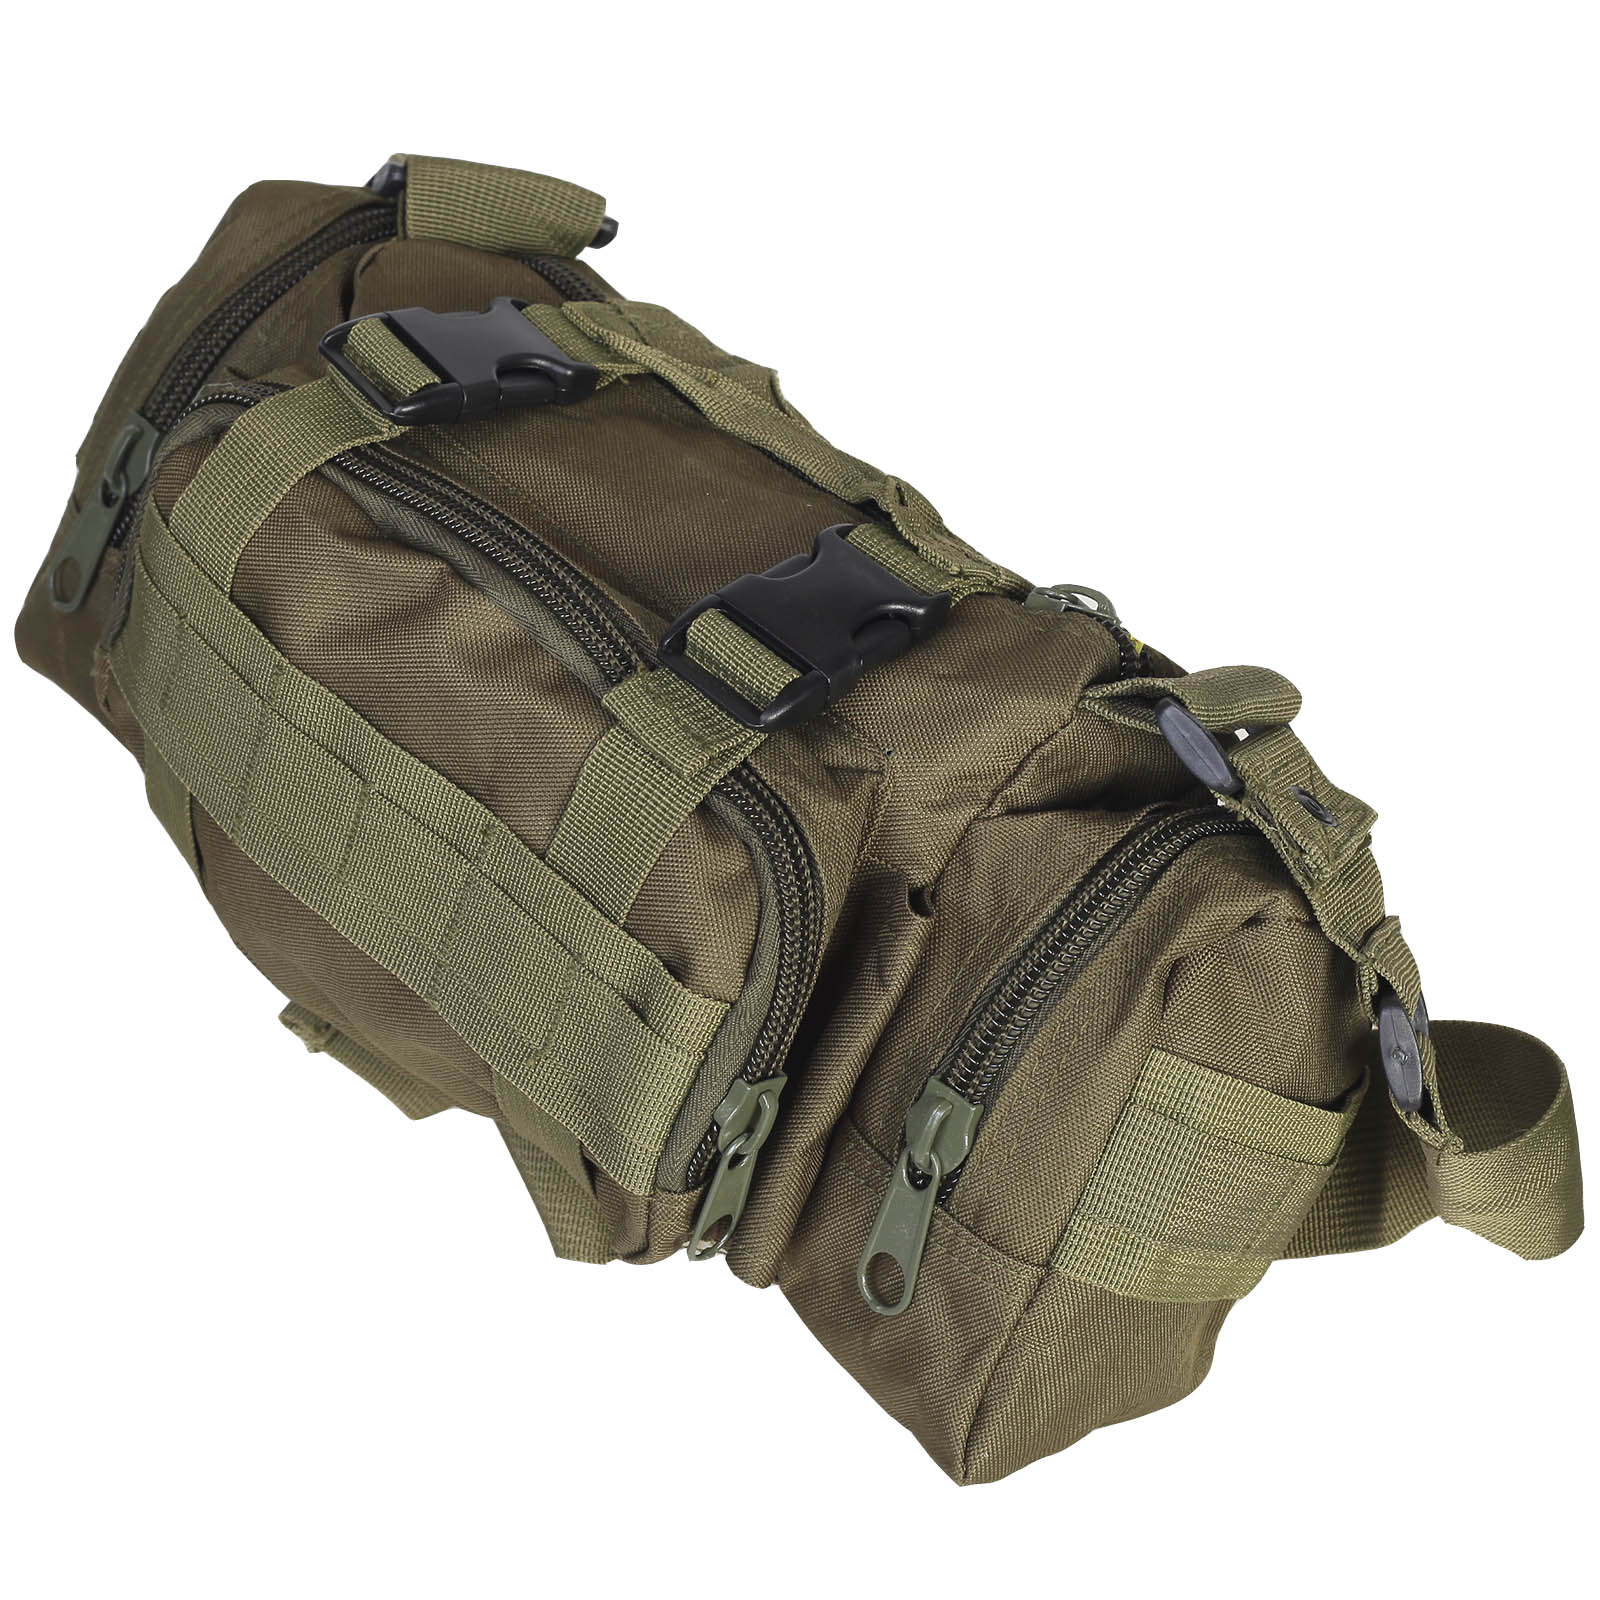 Компактная мужская сумка на плечо и пояс 